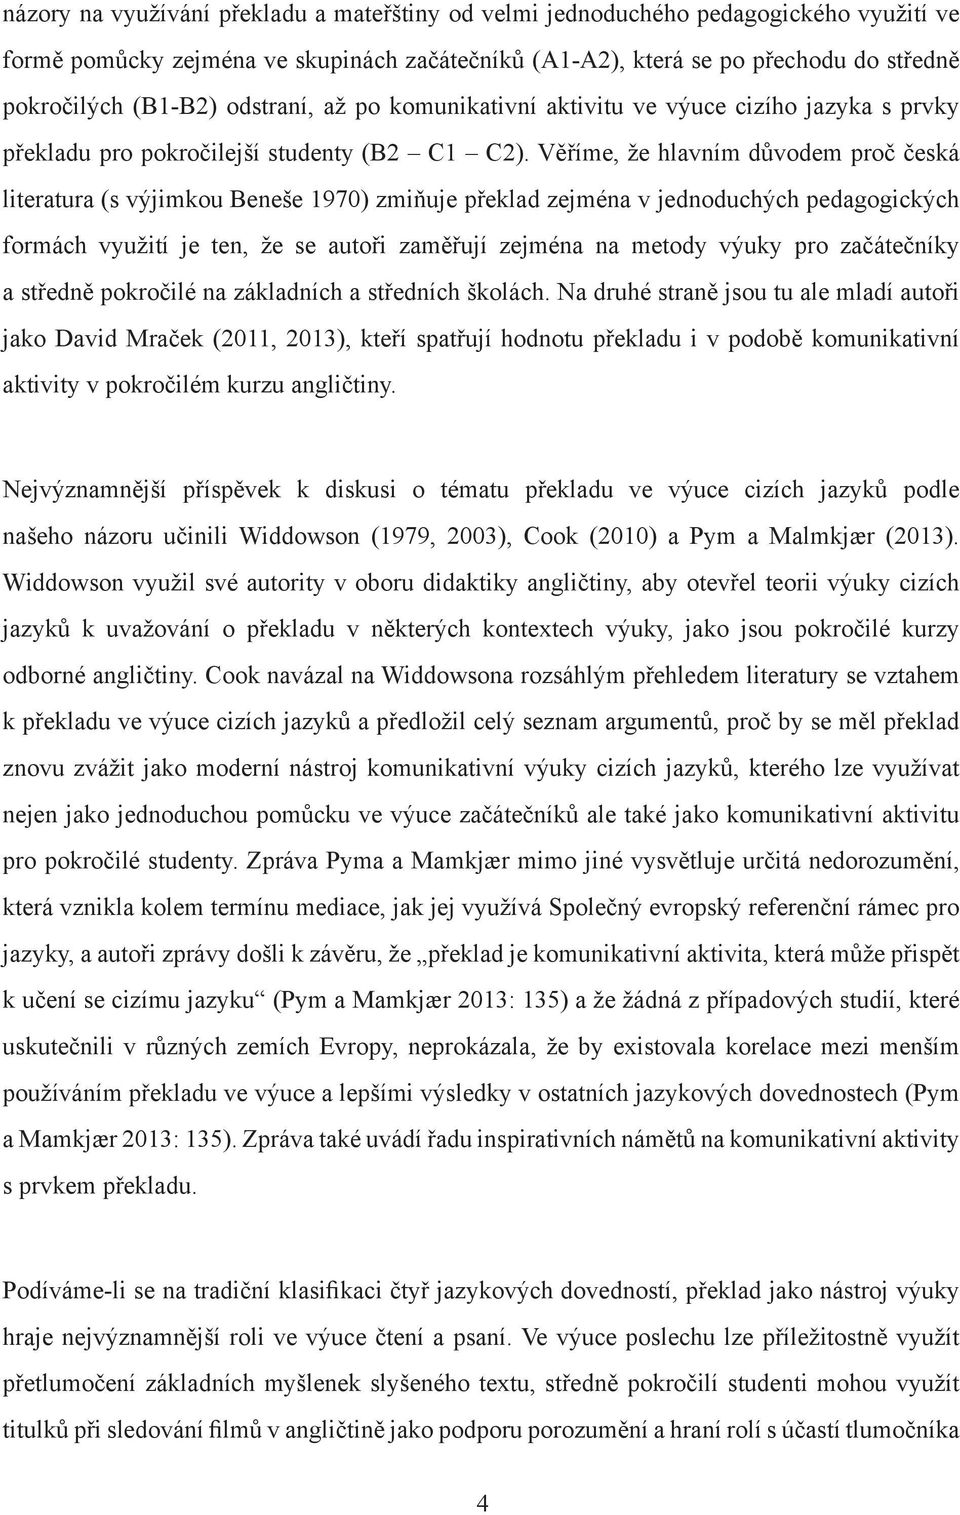 Věříme, že hlavním důvodem proč česká literatura (s výjimkou Beneše 1970) zmiňuje překlad zejména v jednoduchých pedagogických formách využití je ten, že se autoři zaměřují zejména na metody výuky